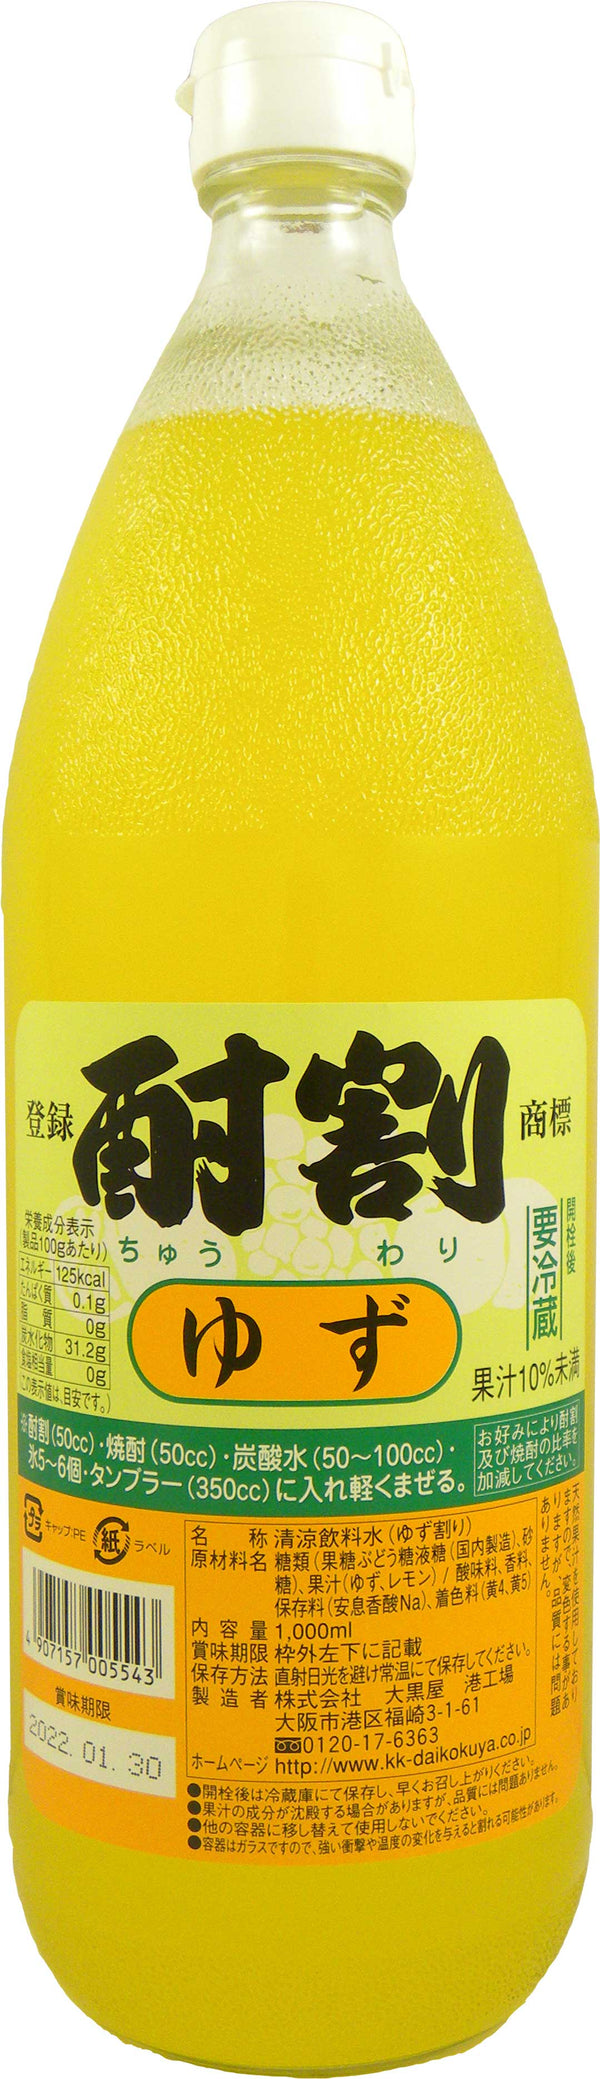 Daikokuya Chuwari Yuzu 1L Bottle Syrup for Commercial Use